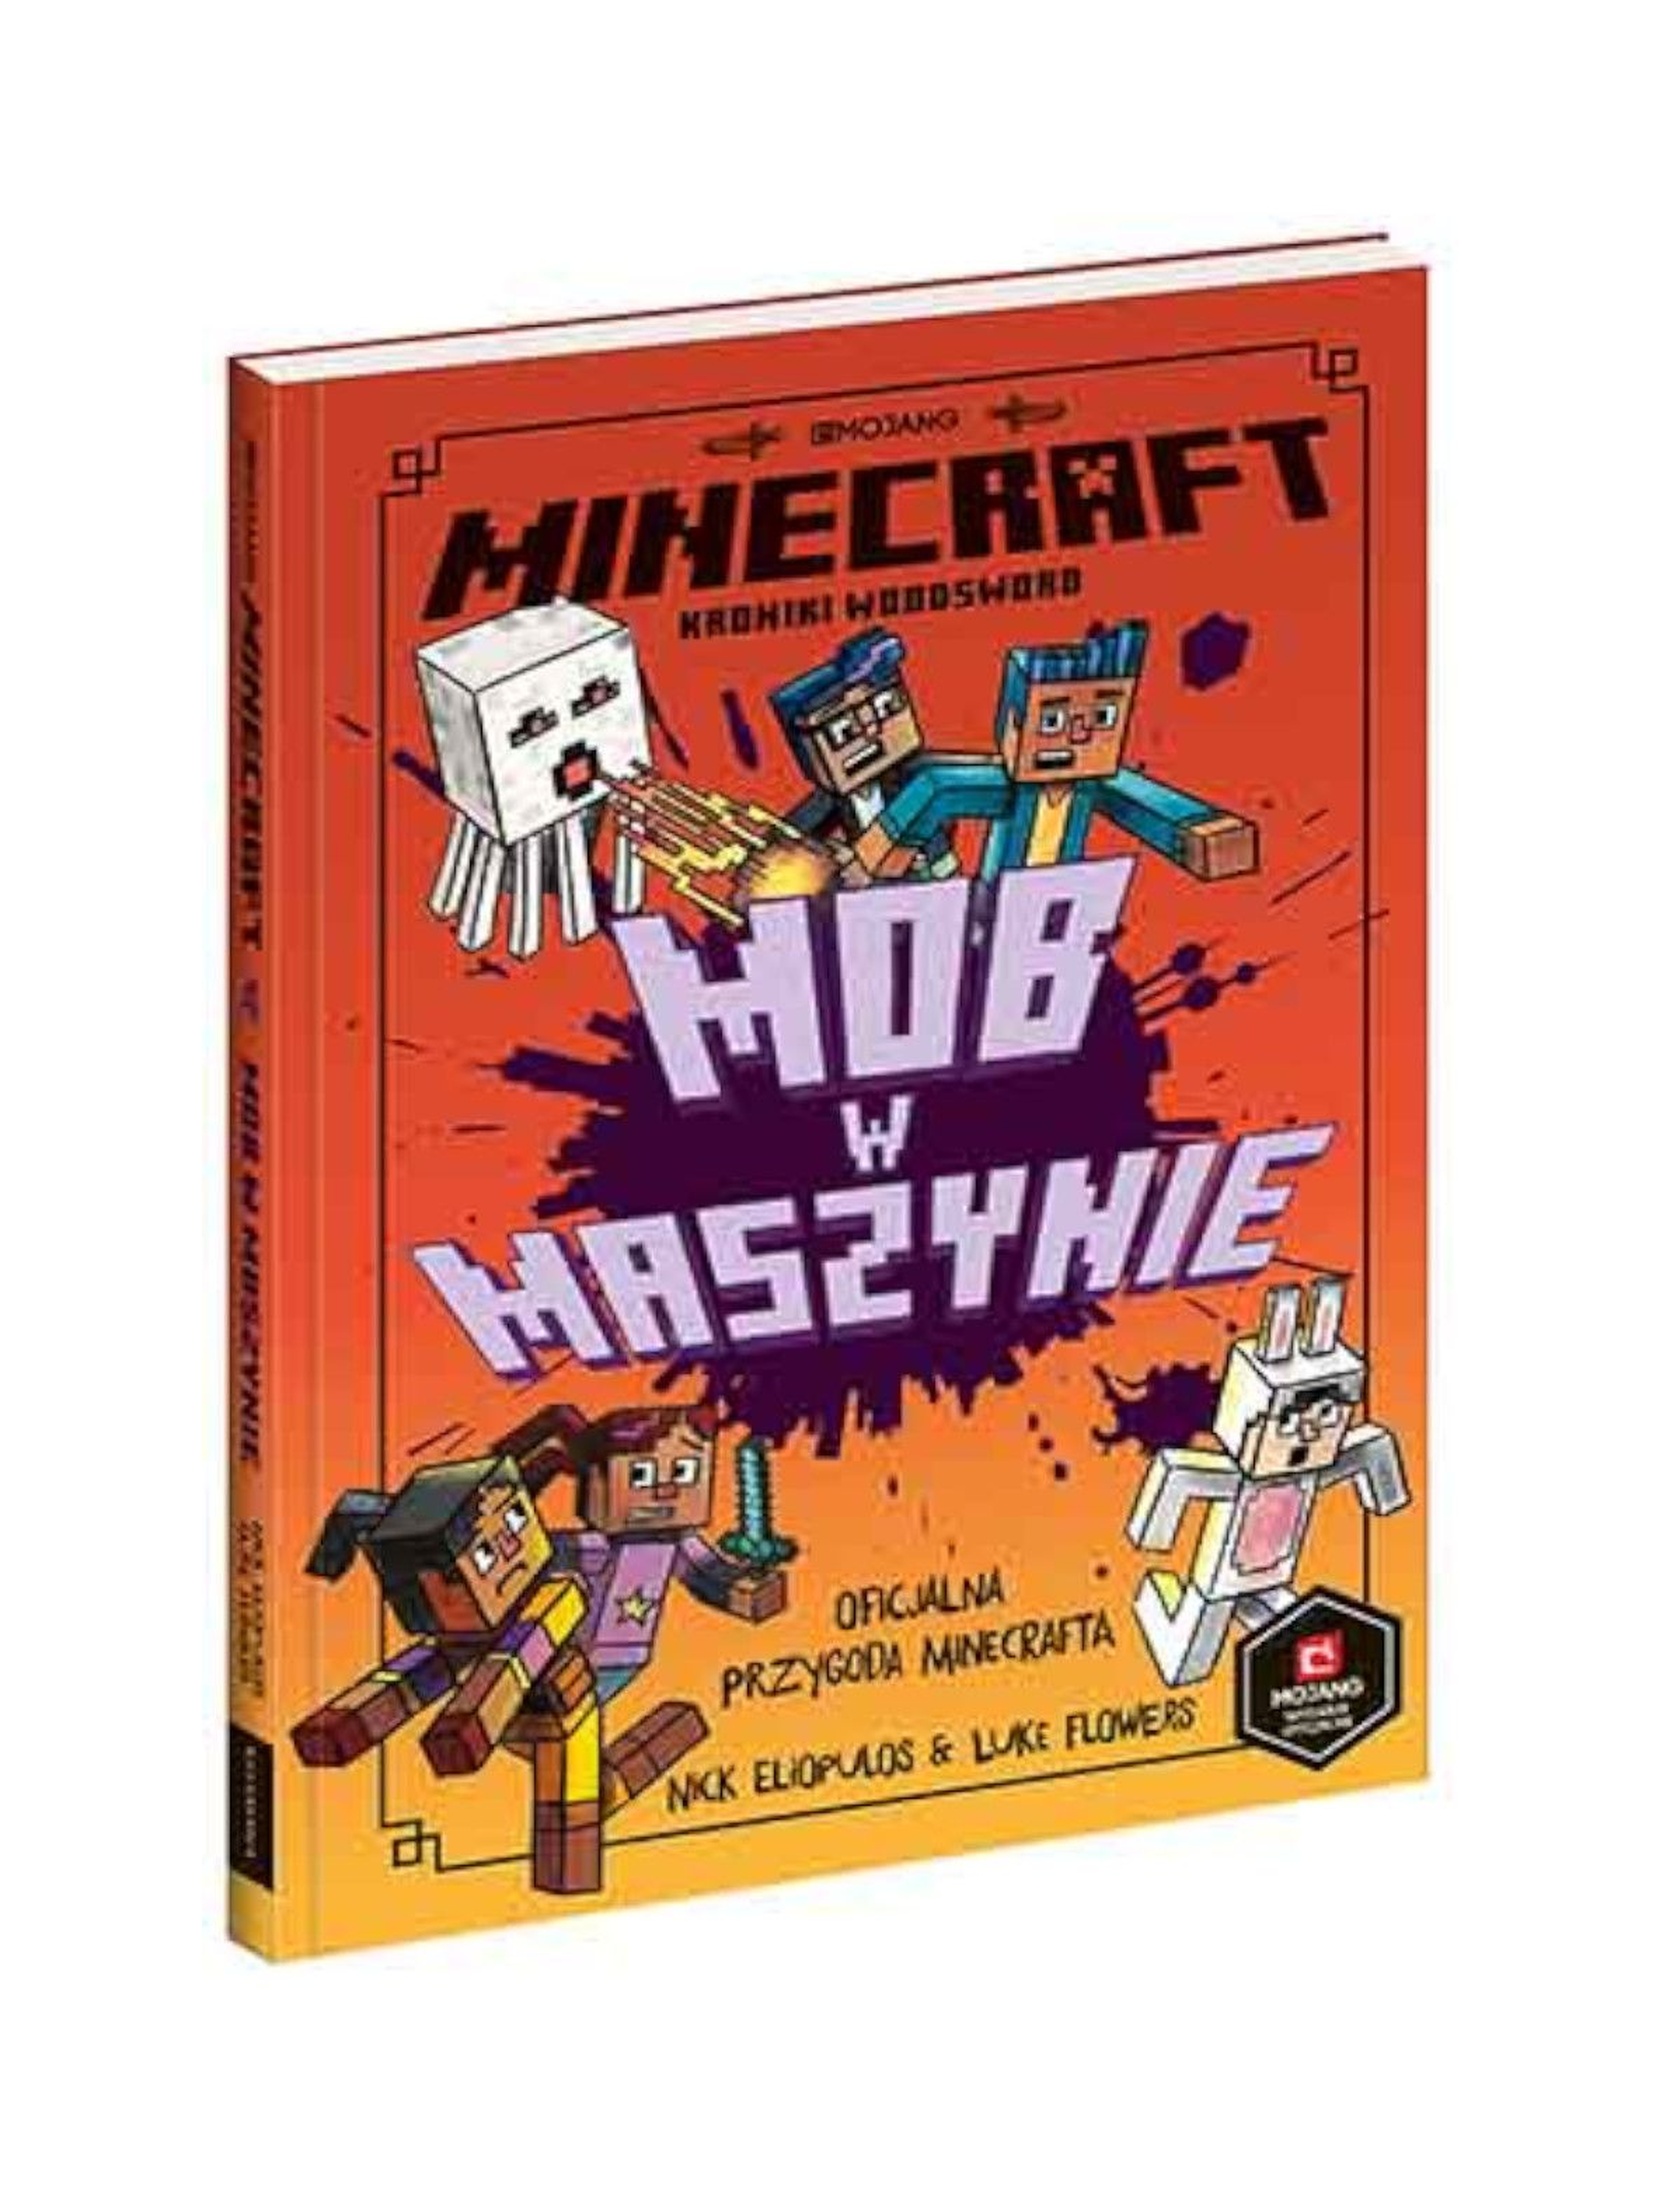 Książka dziecięca - Minecraft. Mob w maszynie Książka dziecięca